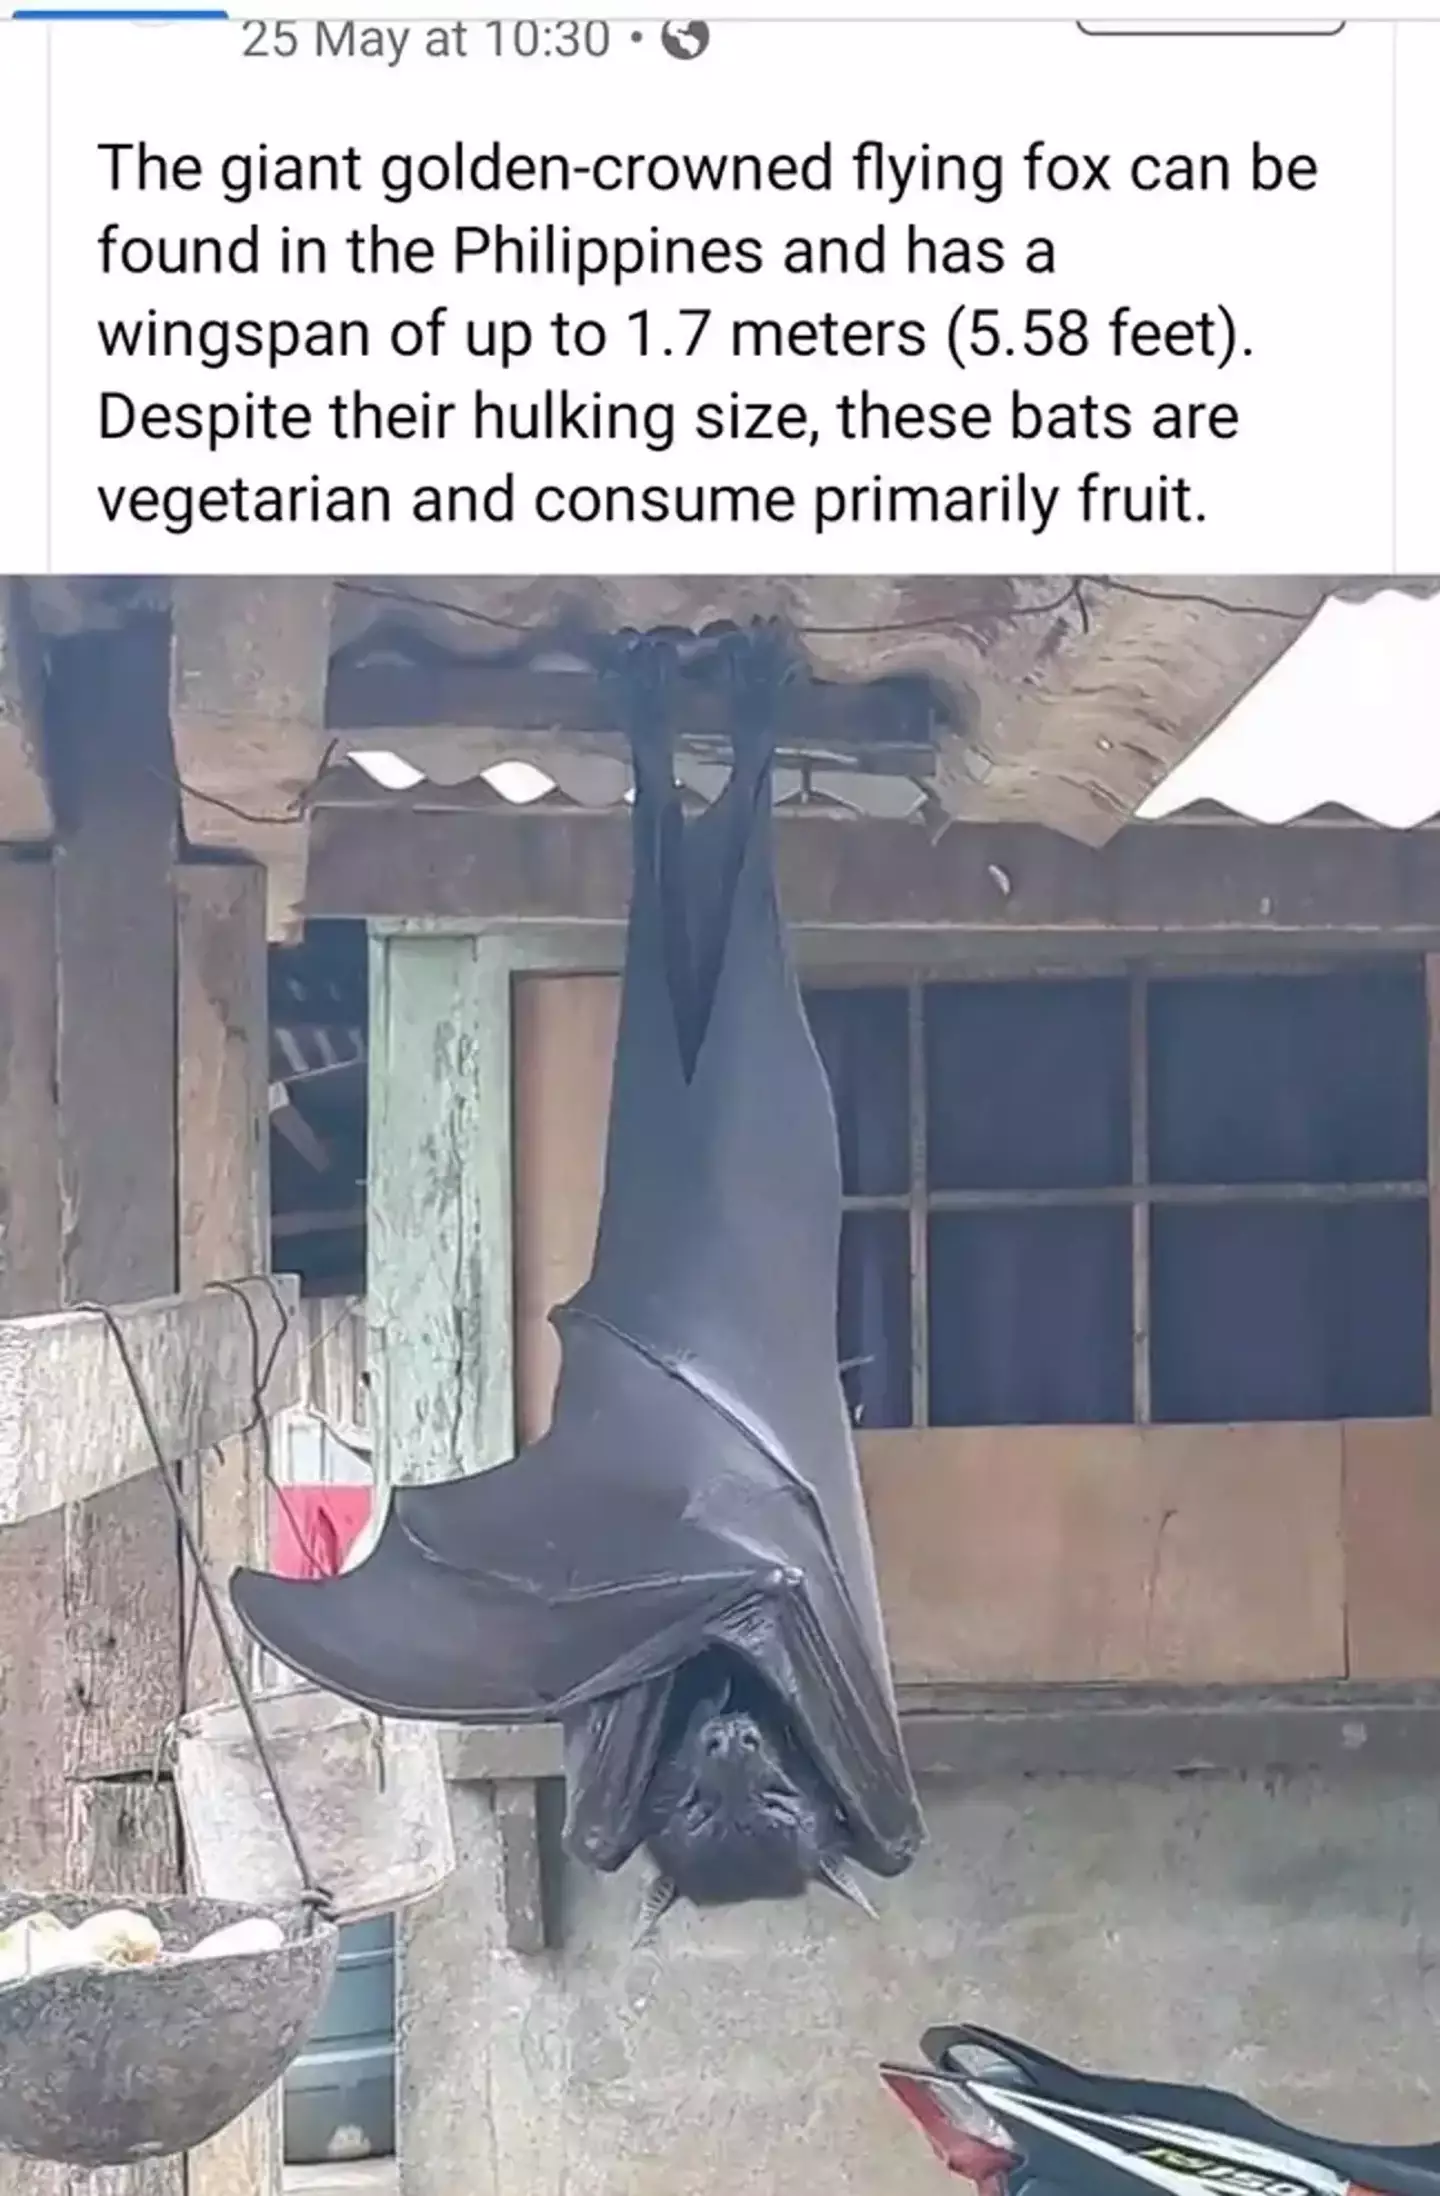 That's quite a bat.